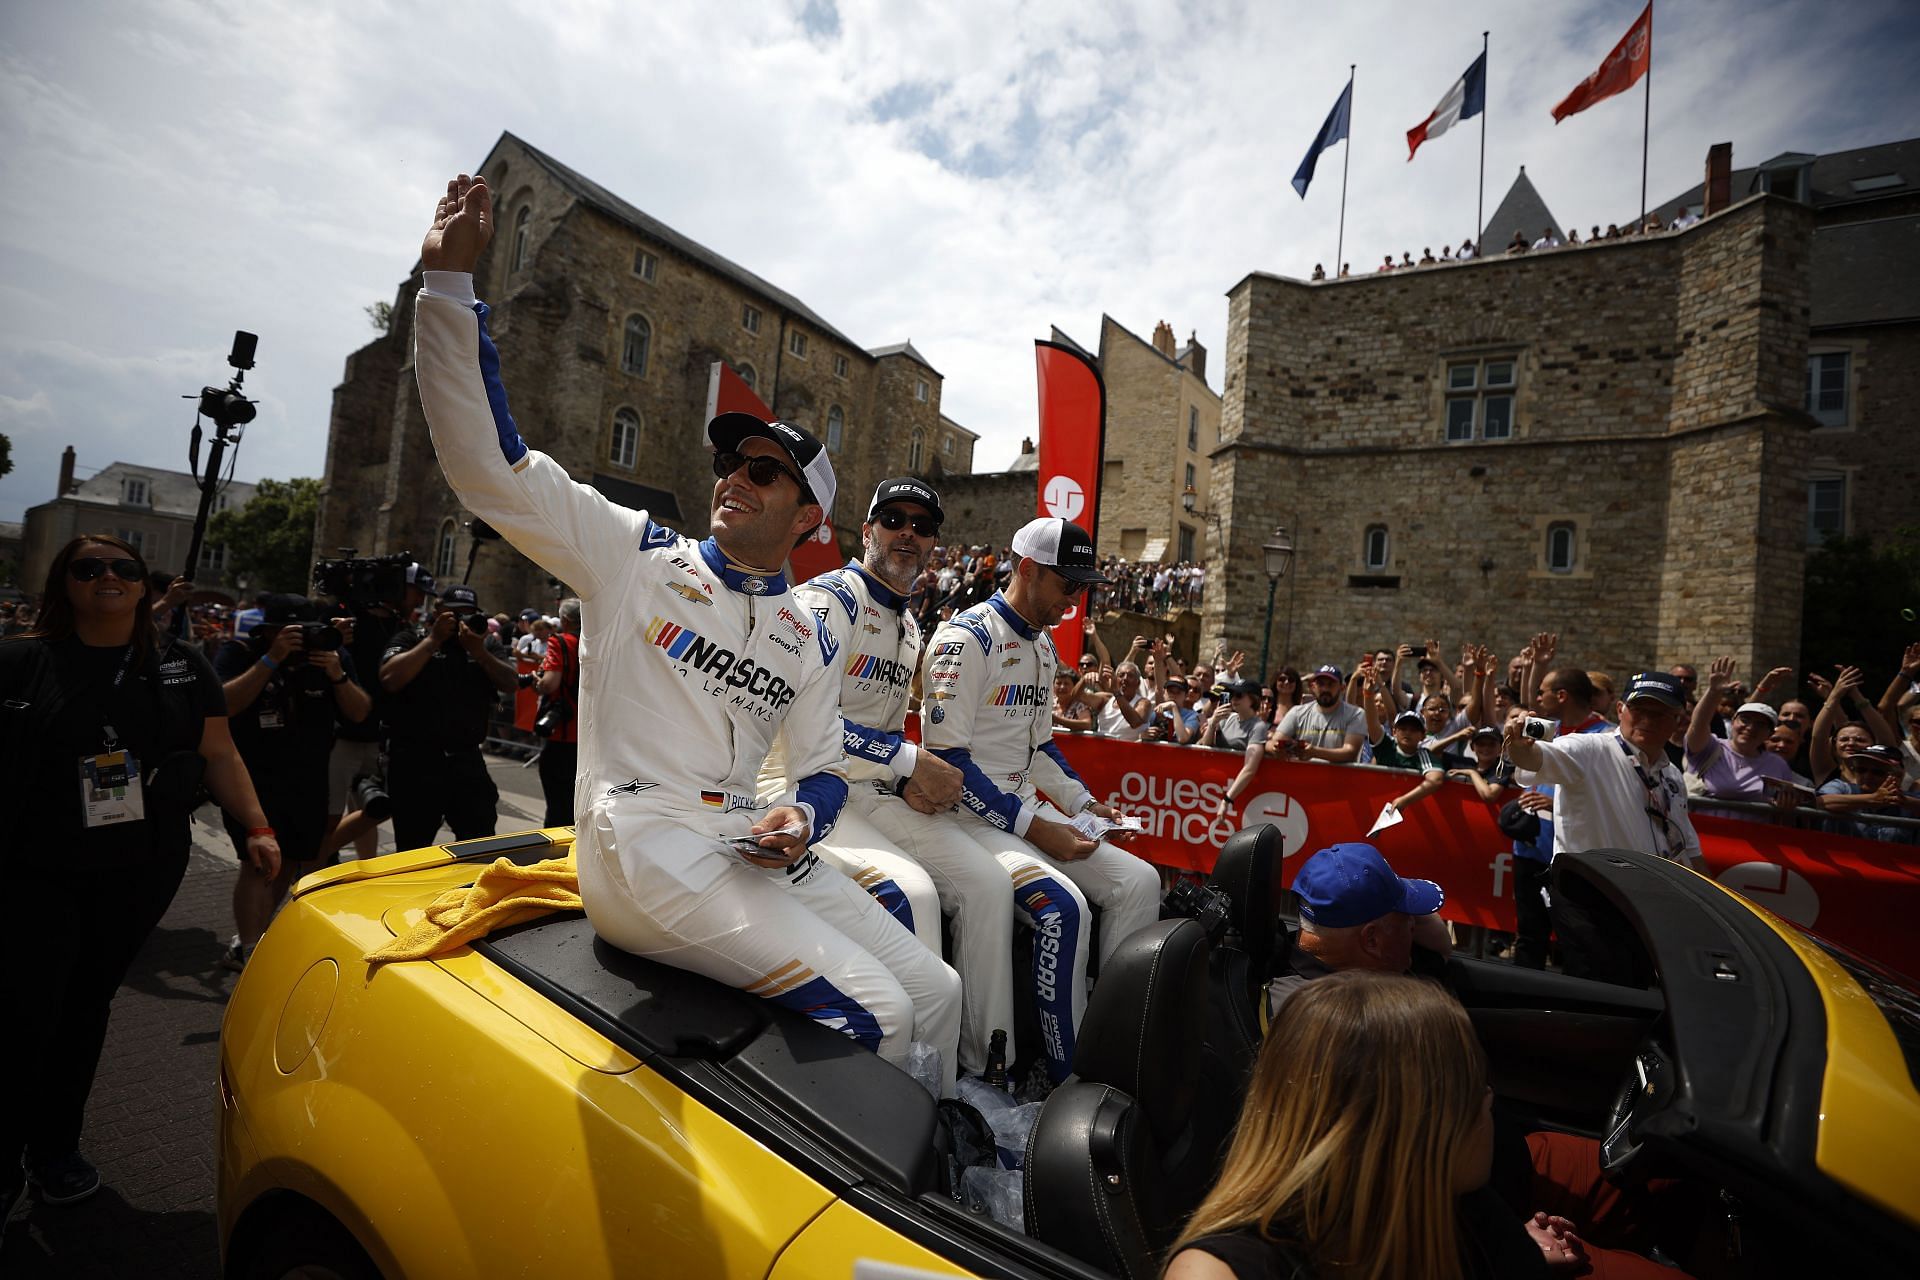 Le Mans 24-Hour Race - Drivers Parade 